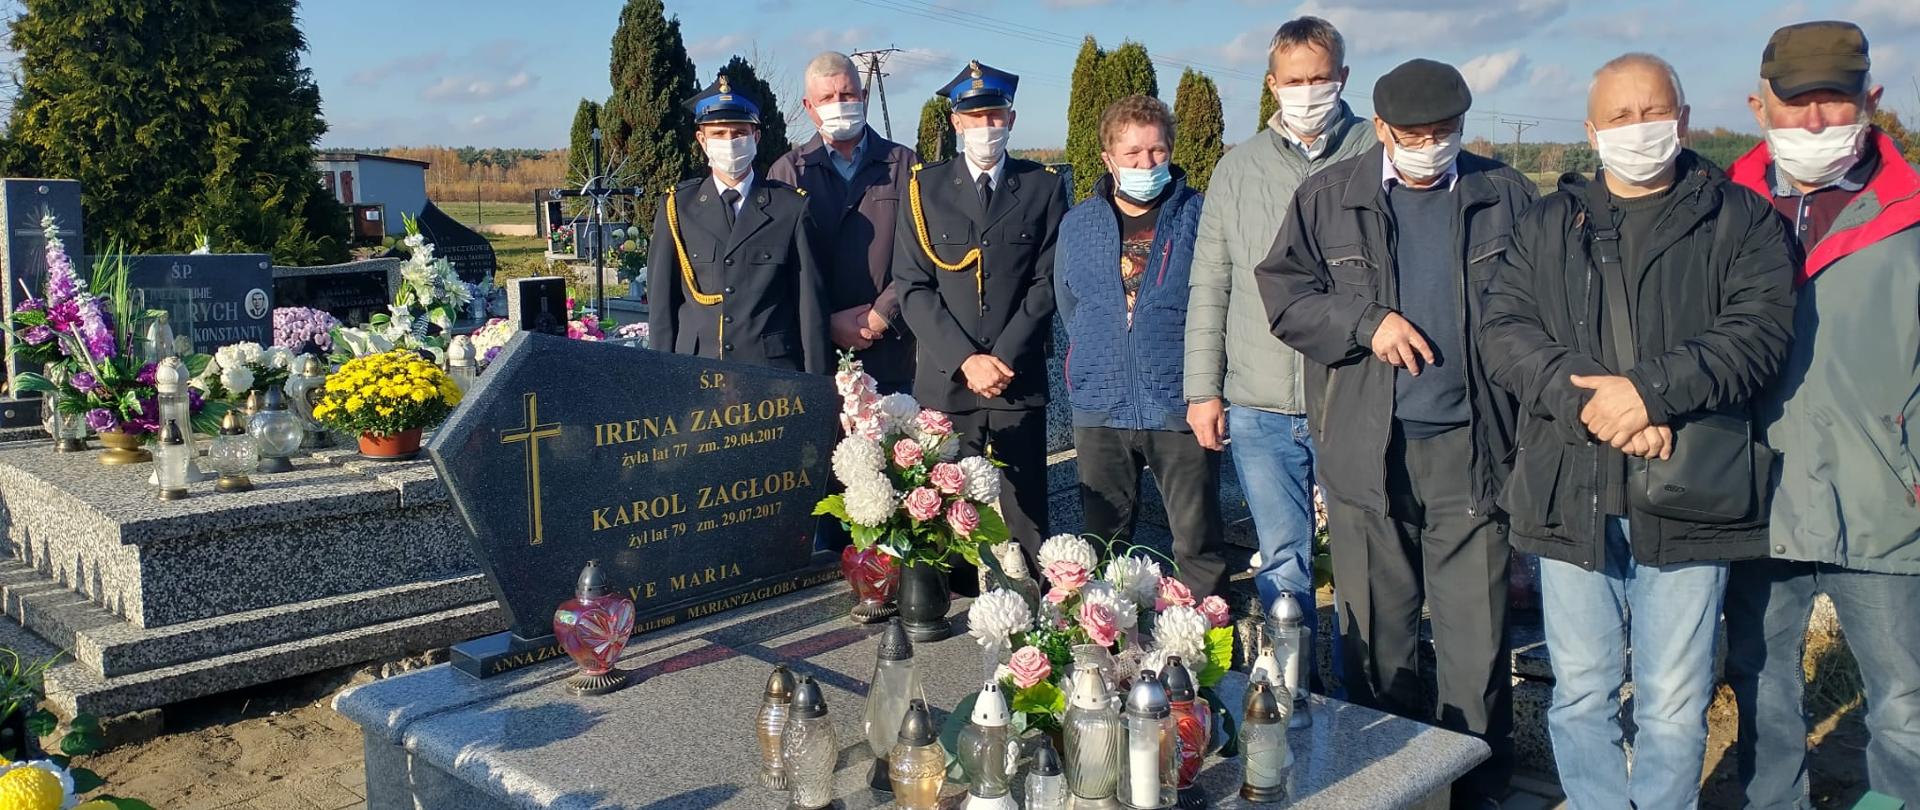 Dwaj strażacy ubrani w mundurach stoją wraz z sześcioma mężczyznami na cmentarzu przy pomniku na którym ustawione są znicze i kwiaty. Wszyscy mają założone maseczki Na płycie pomnika widać napis śp Irena Zagłoba żyła lat 77 Karol Zagłoba żył lat 79